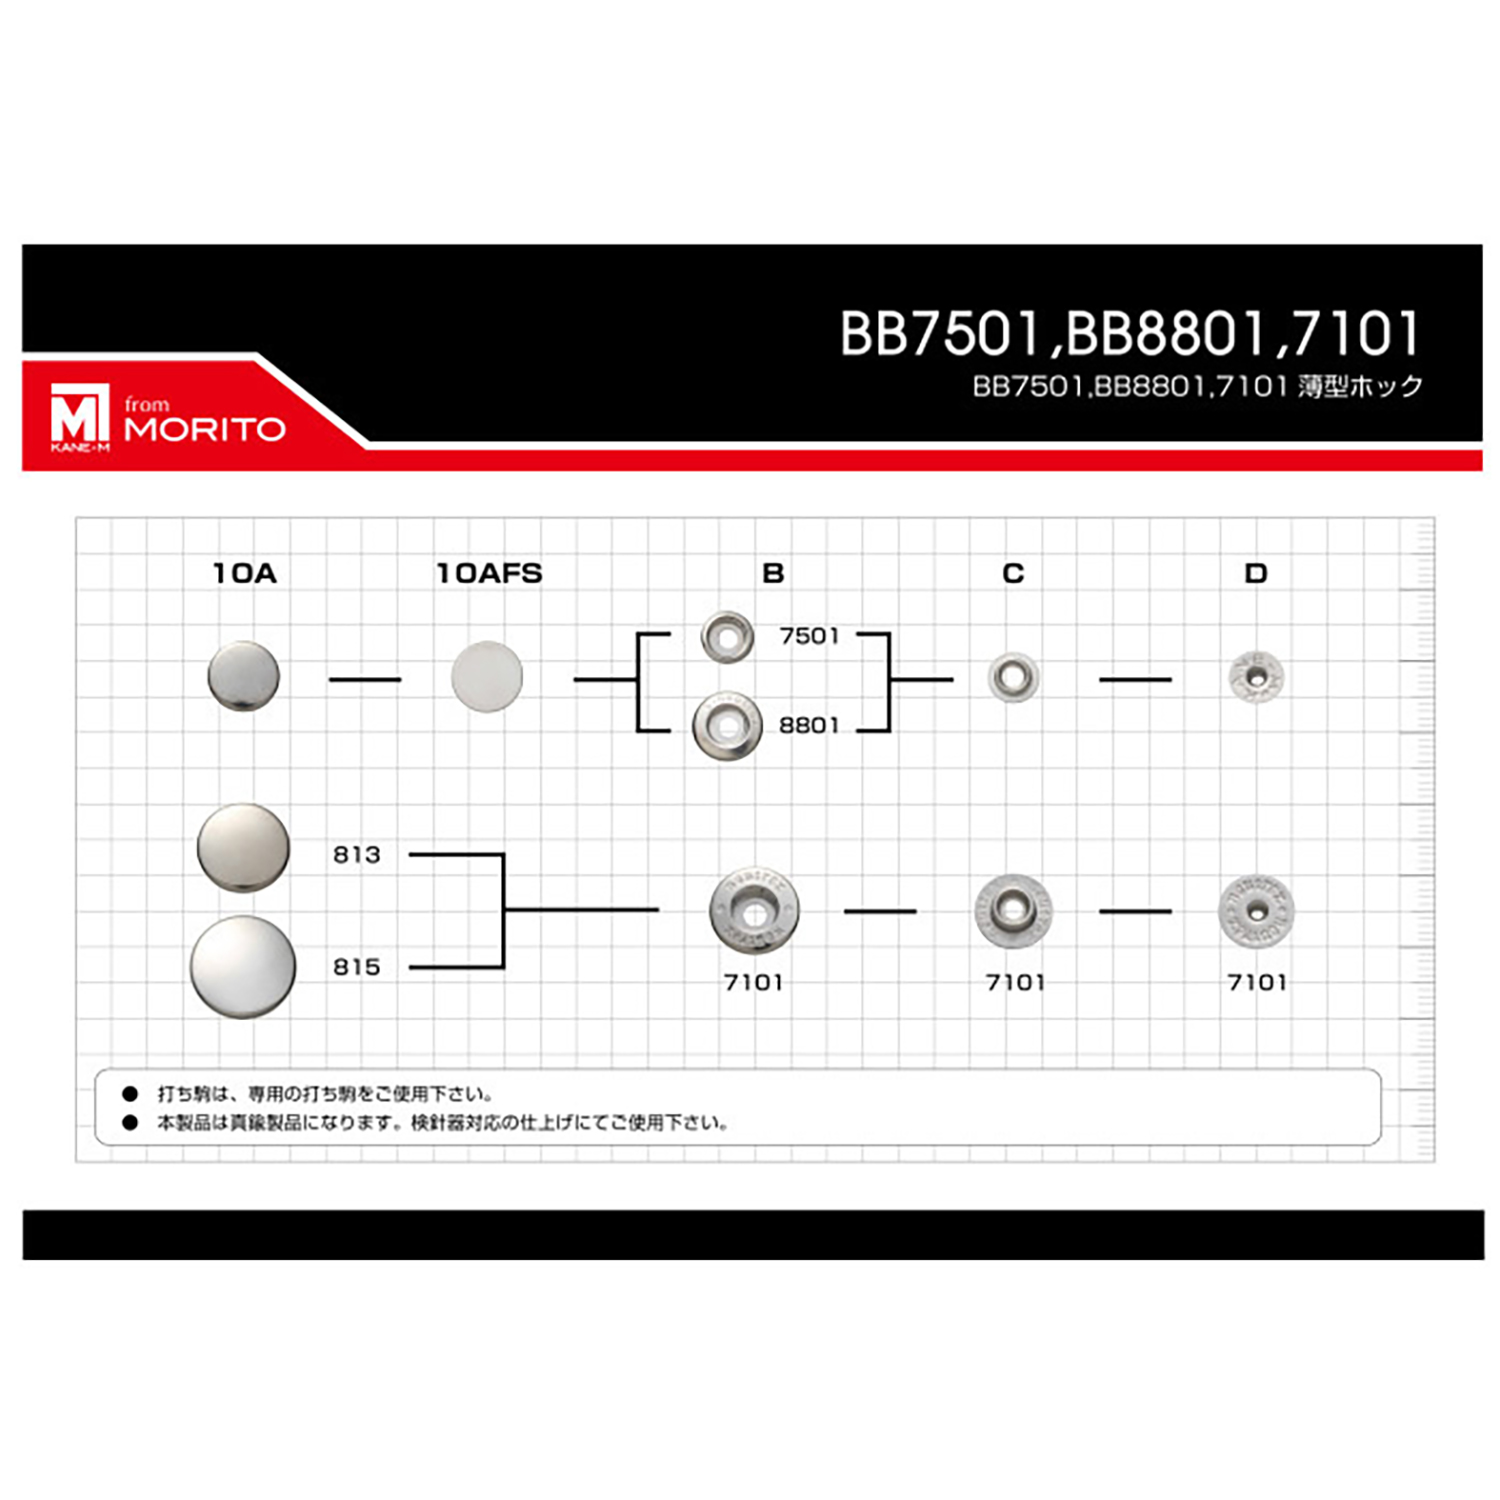 7501 B/C/D ミニセレックス アンダーパーツ (バネ/ゲンコ/ホソSET)[ドットボタン・ハトメ] モリト(MORITO)